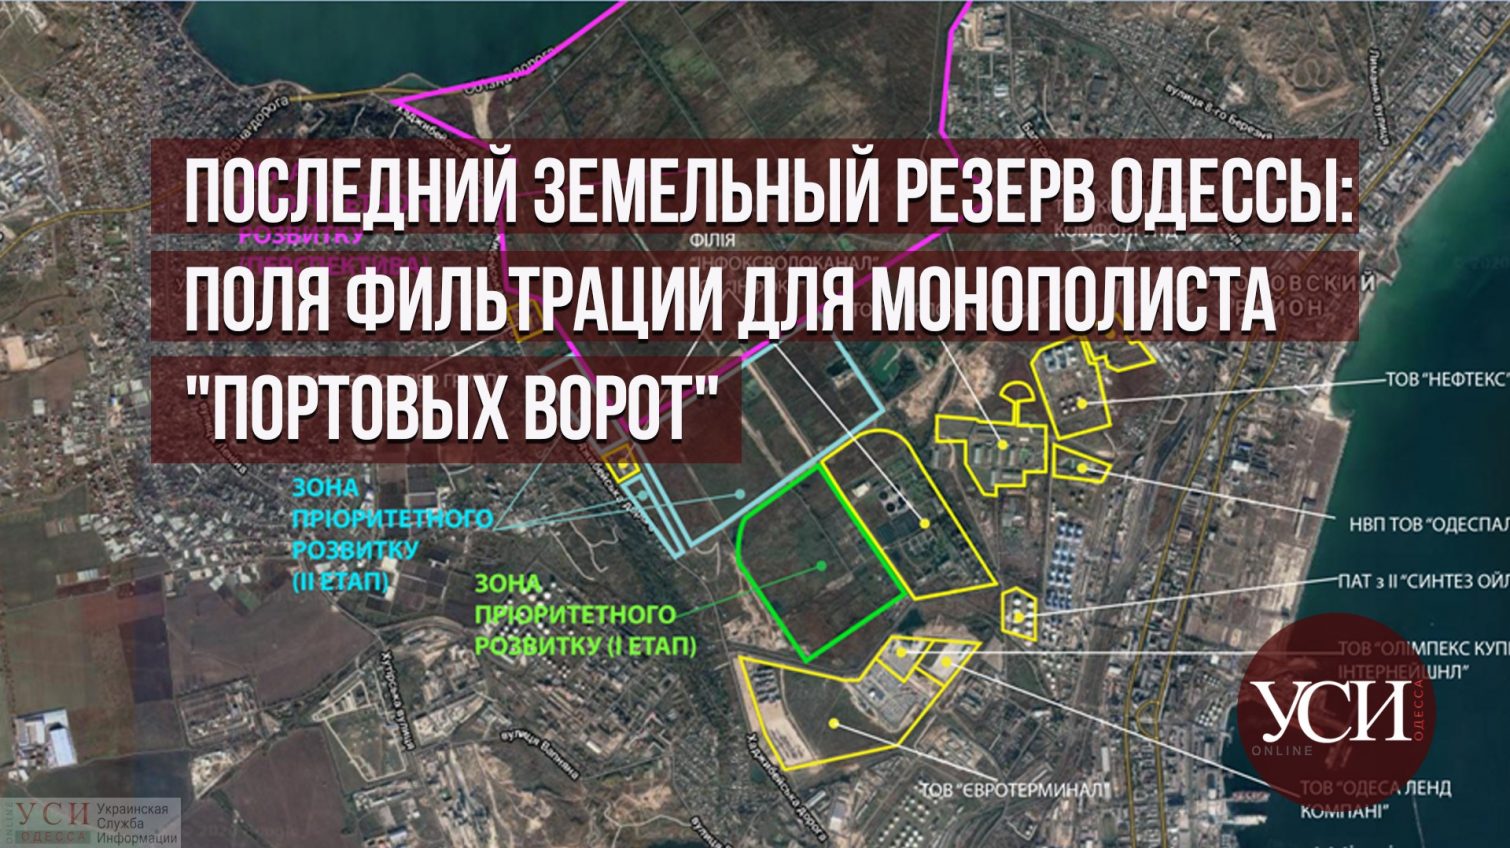 Последний земельный резерв Одессы: поля фильтрации для монополиста “портовых ворот” «фото»